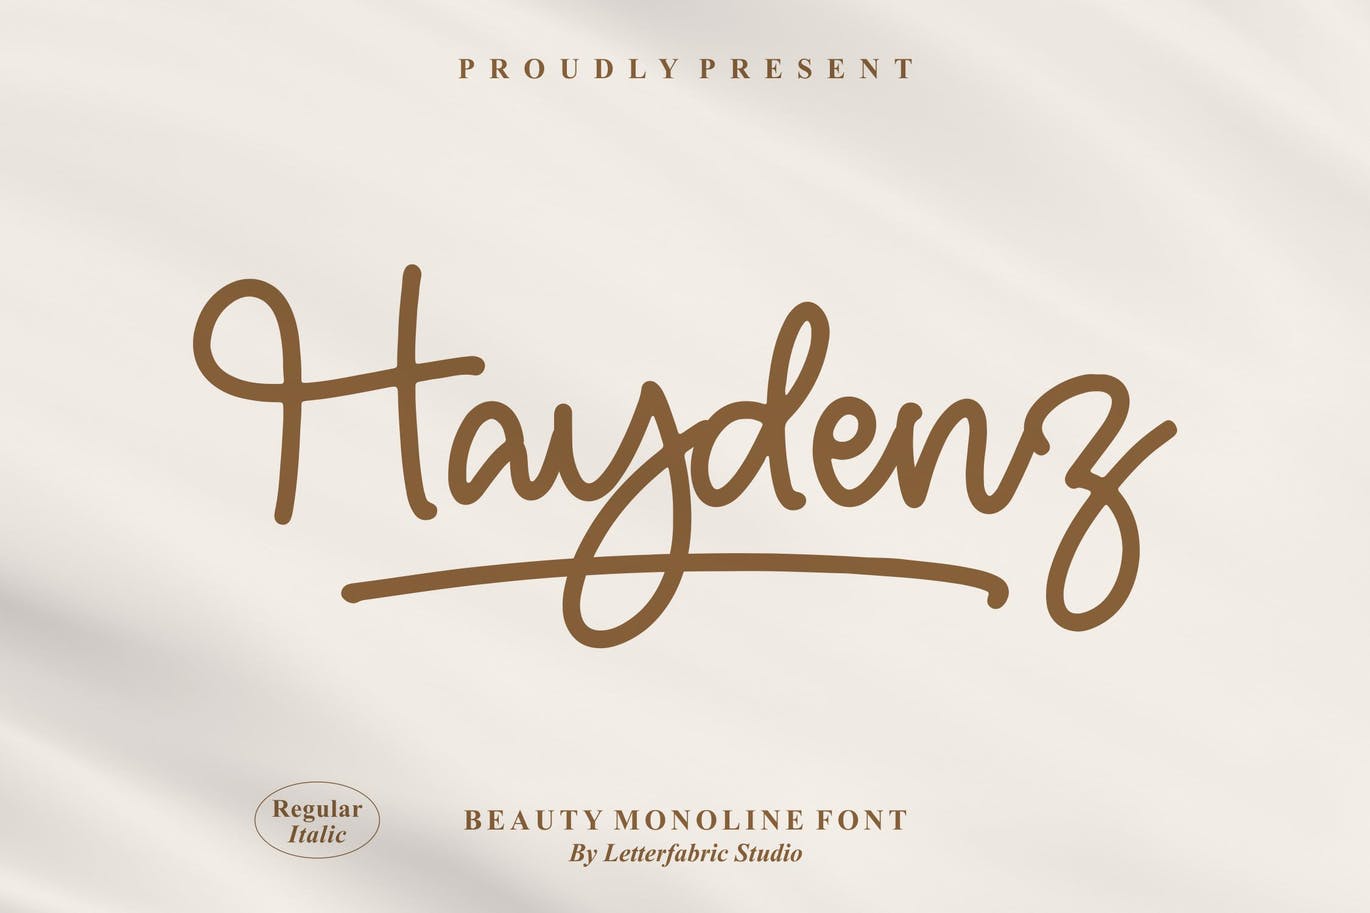 艺术连字创意字体素材 Haydenz Monoline Font 设计素材 第9张